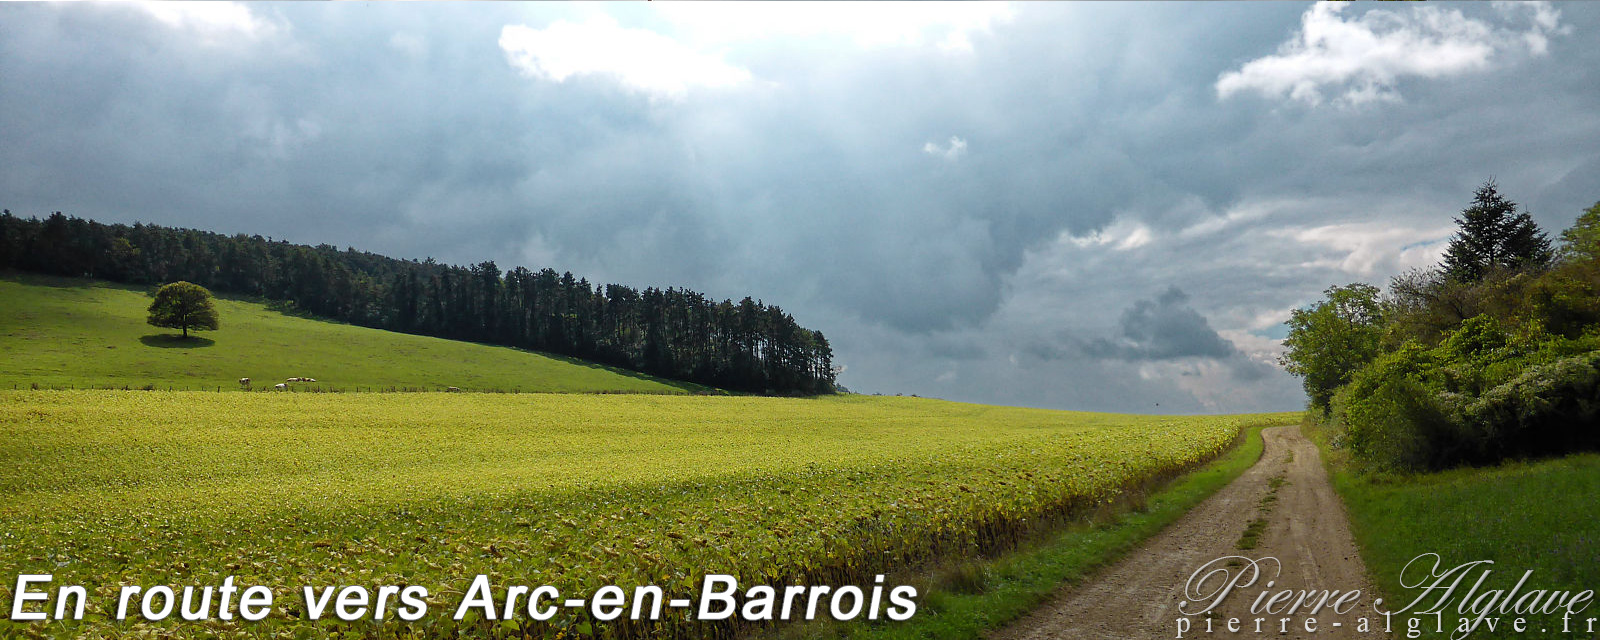 Vers Arc-en-Barrois